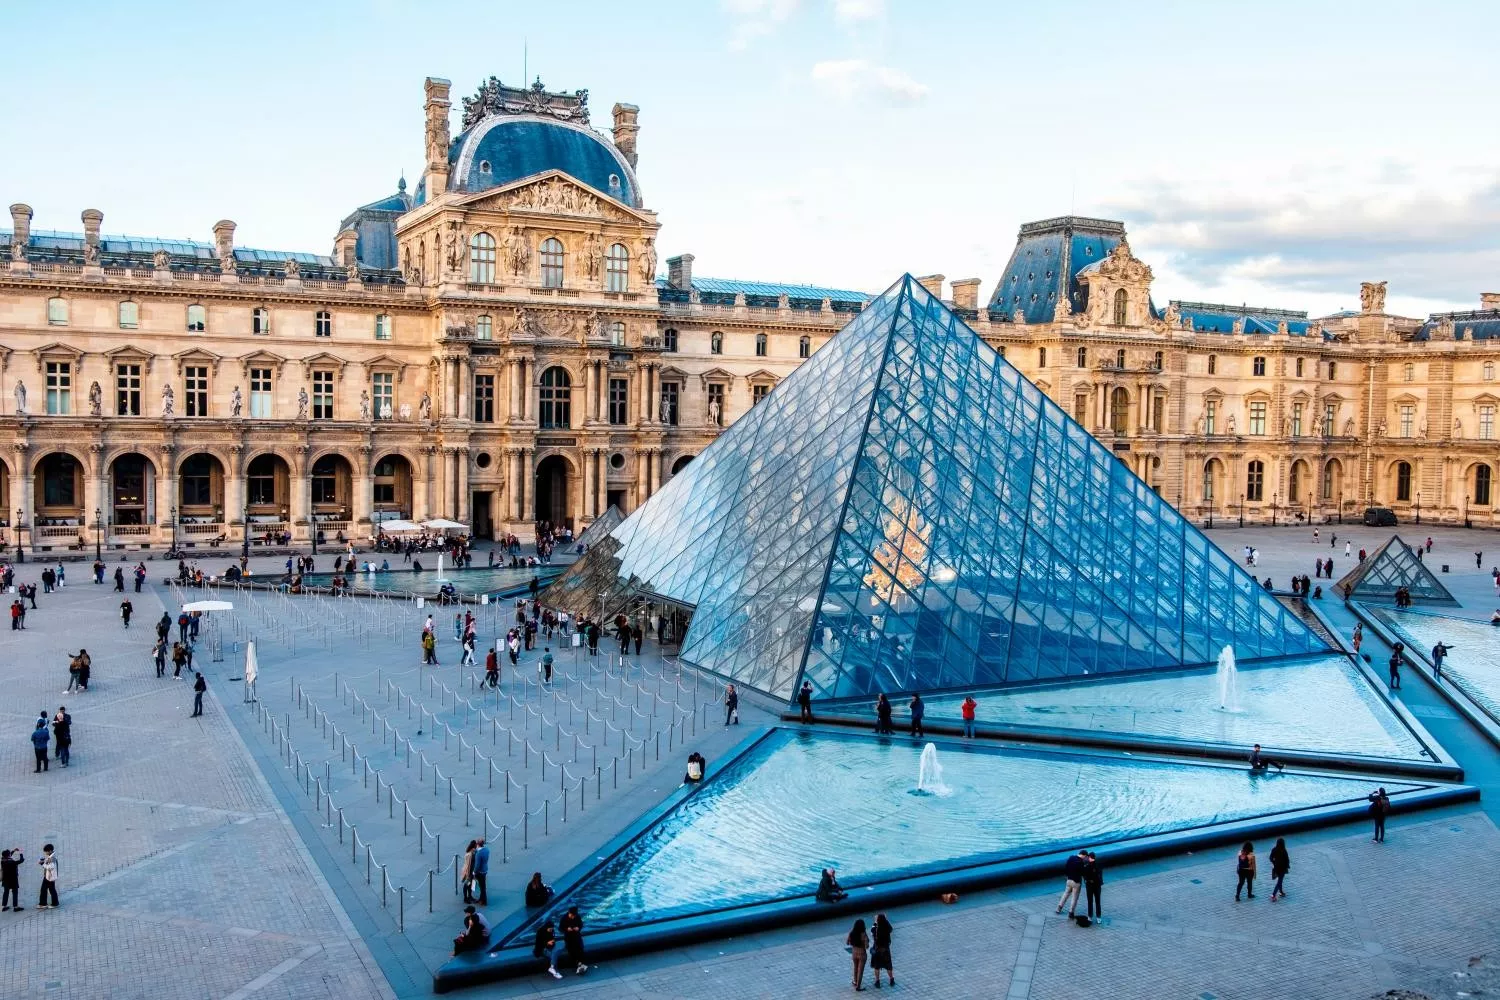 A Bénédictus segur que li hauria fet il·lusió veure com el seu vidre laminat era utilitzat per construir la piràmide del Louvre